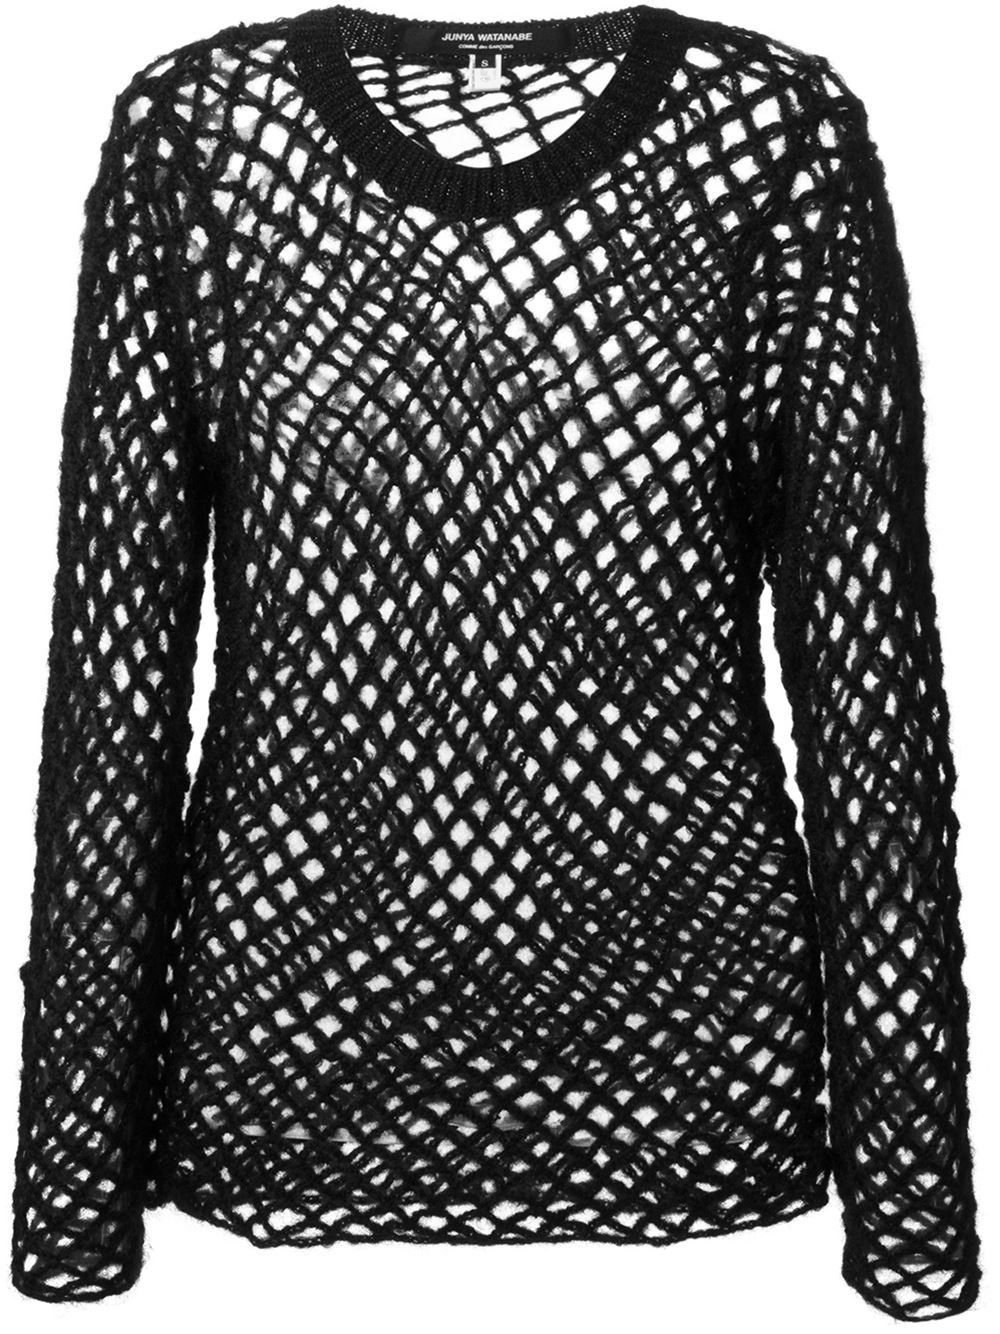 Junya Watanabe Fishnet Knit Sweater in Black - Lyst